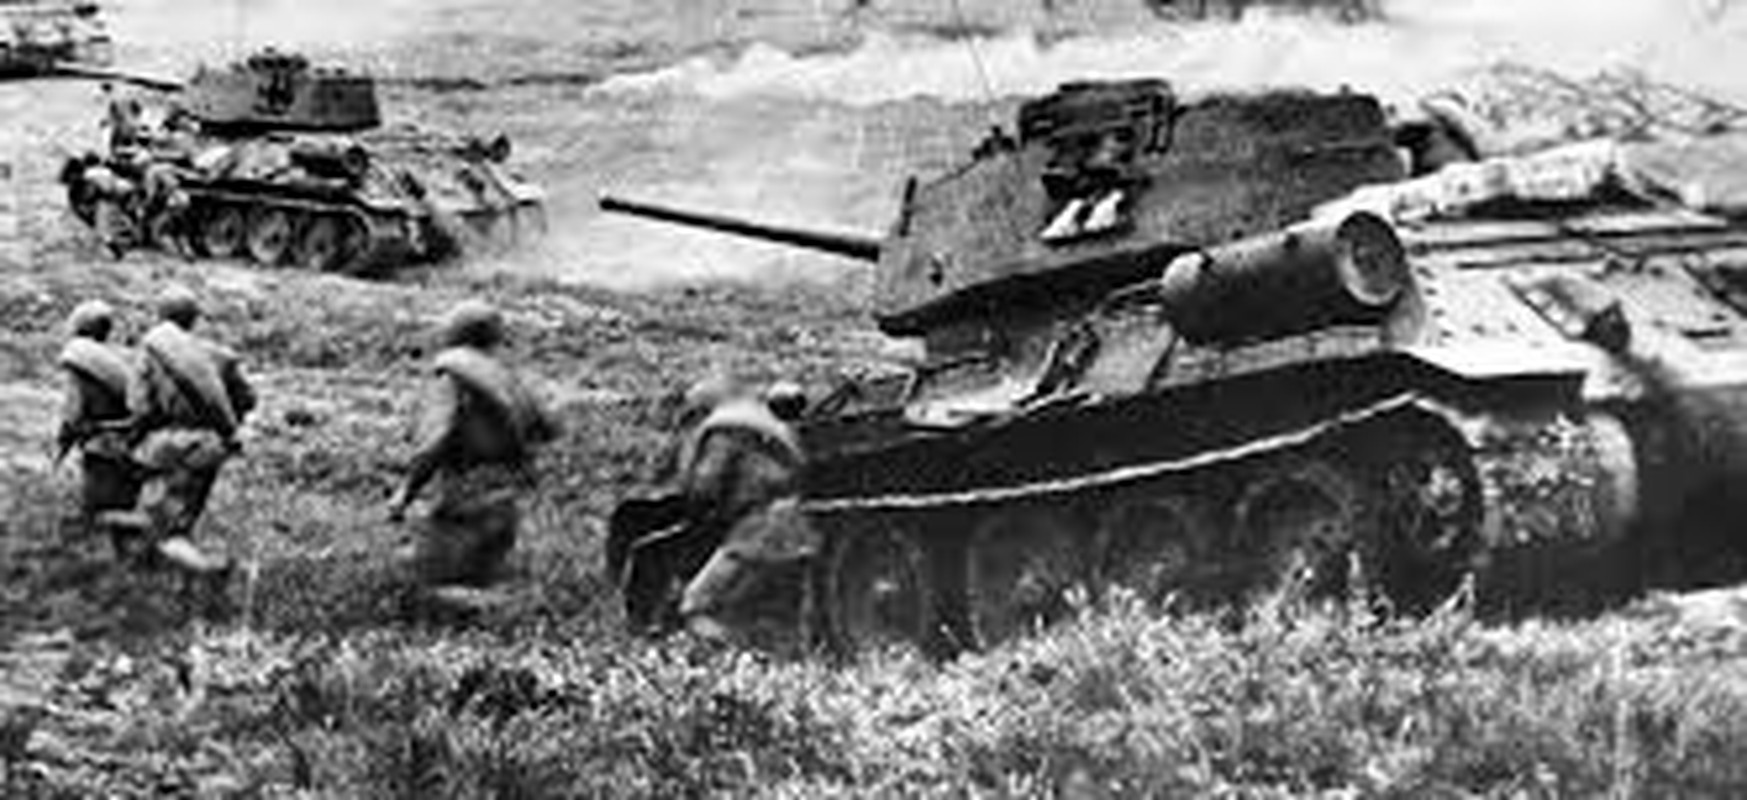             Người lính Liên Xô lập kỷ lục tiêu diệt xe tăng Đức quốc xã    